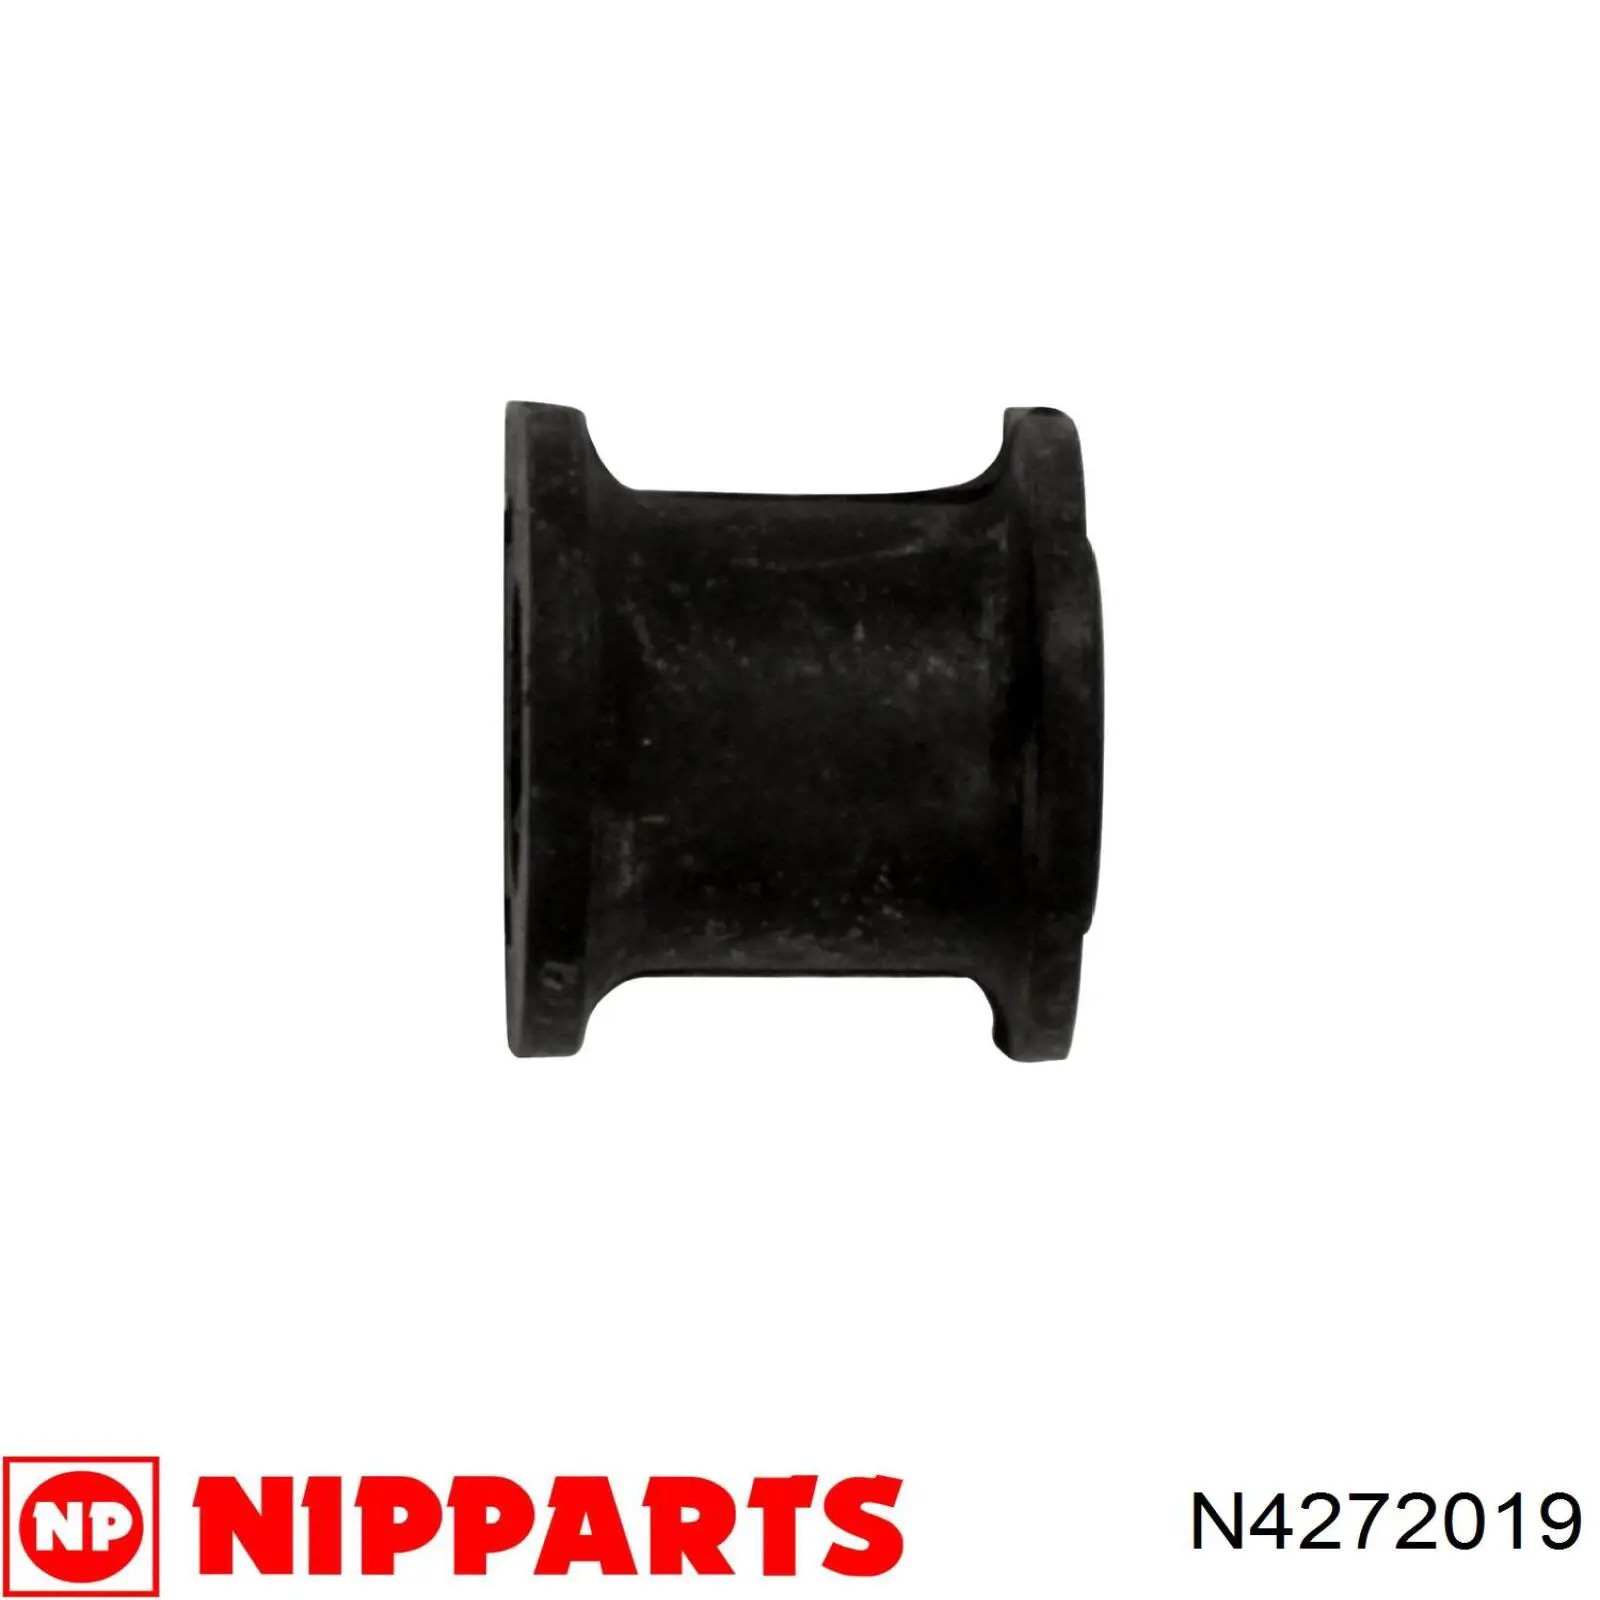 N4272019 Nipparts casquillo de barra estabilizadora delantera